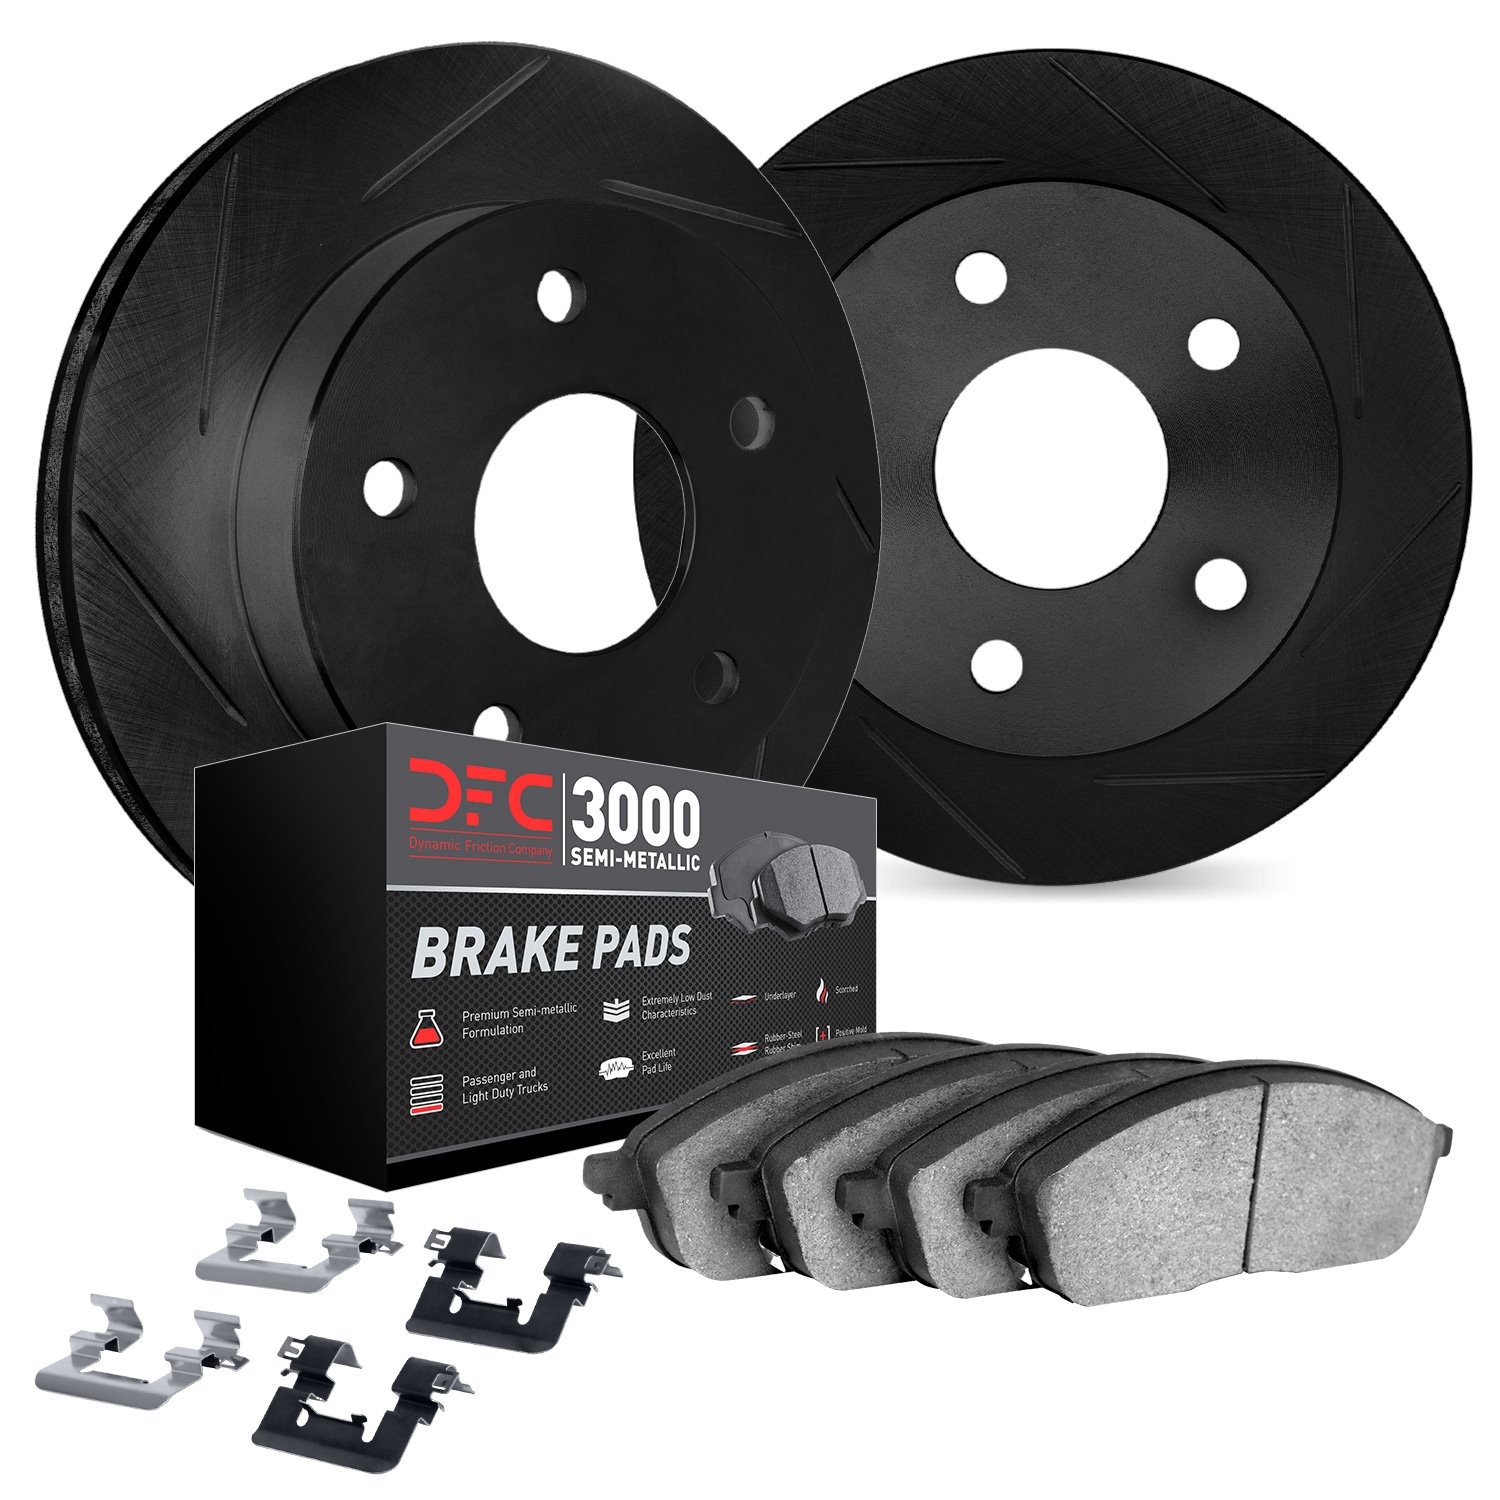 3112-31090 Slotted Brake Rotors with 3000-Series Semi-Metallic Brake Pads Kit & Hardware [Black], 2006-2015 BMW, Position: Rear